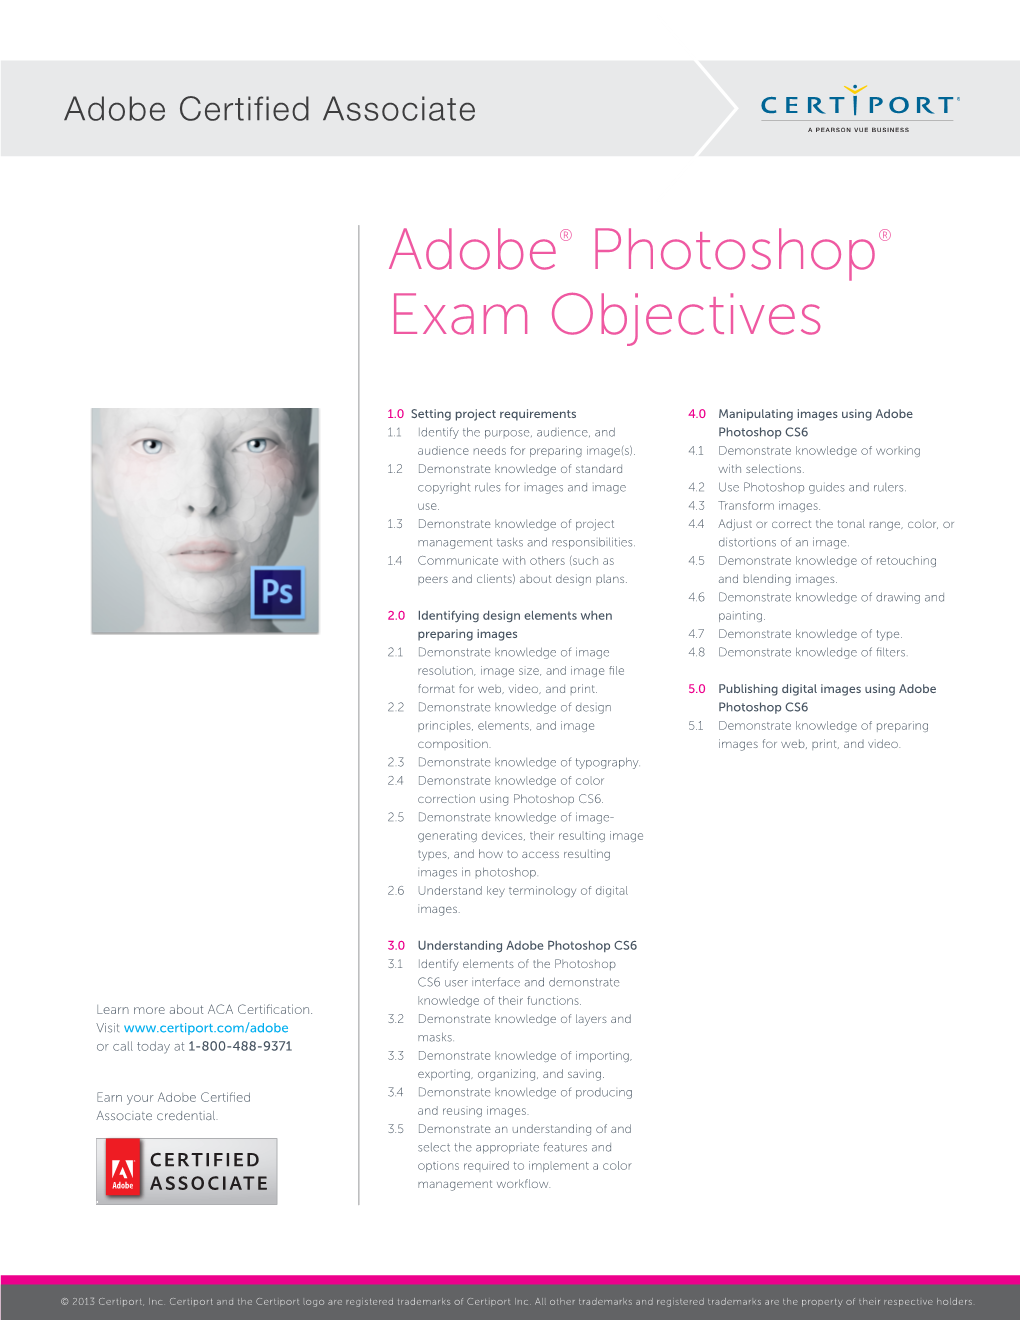 Adobe® Photoshop® Exam Objectives